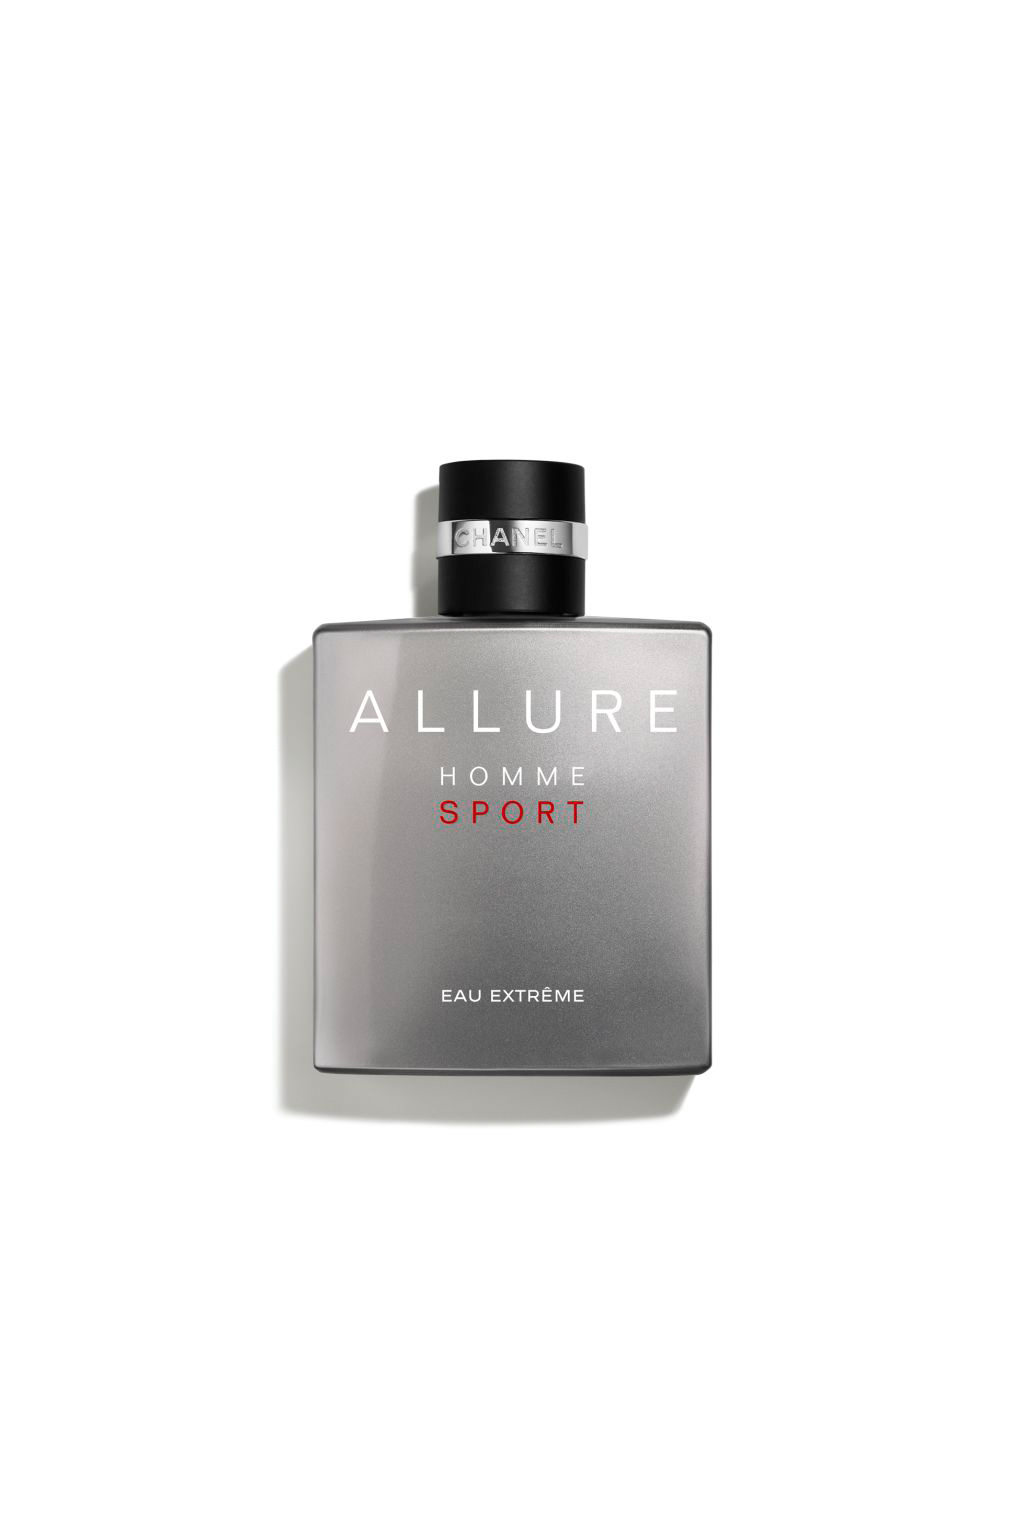 Buy CHANEL ALLURE HOMME SPORT EAU EXTRÊME Eau De Parfum Spray for Mens